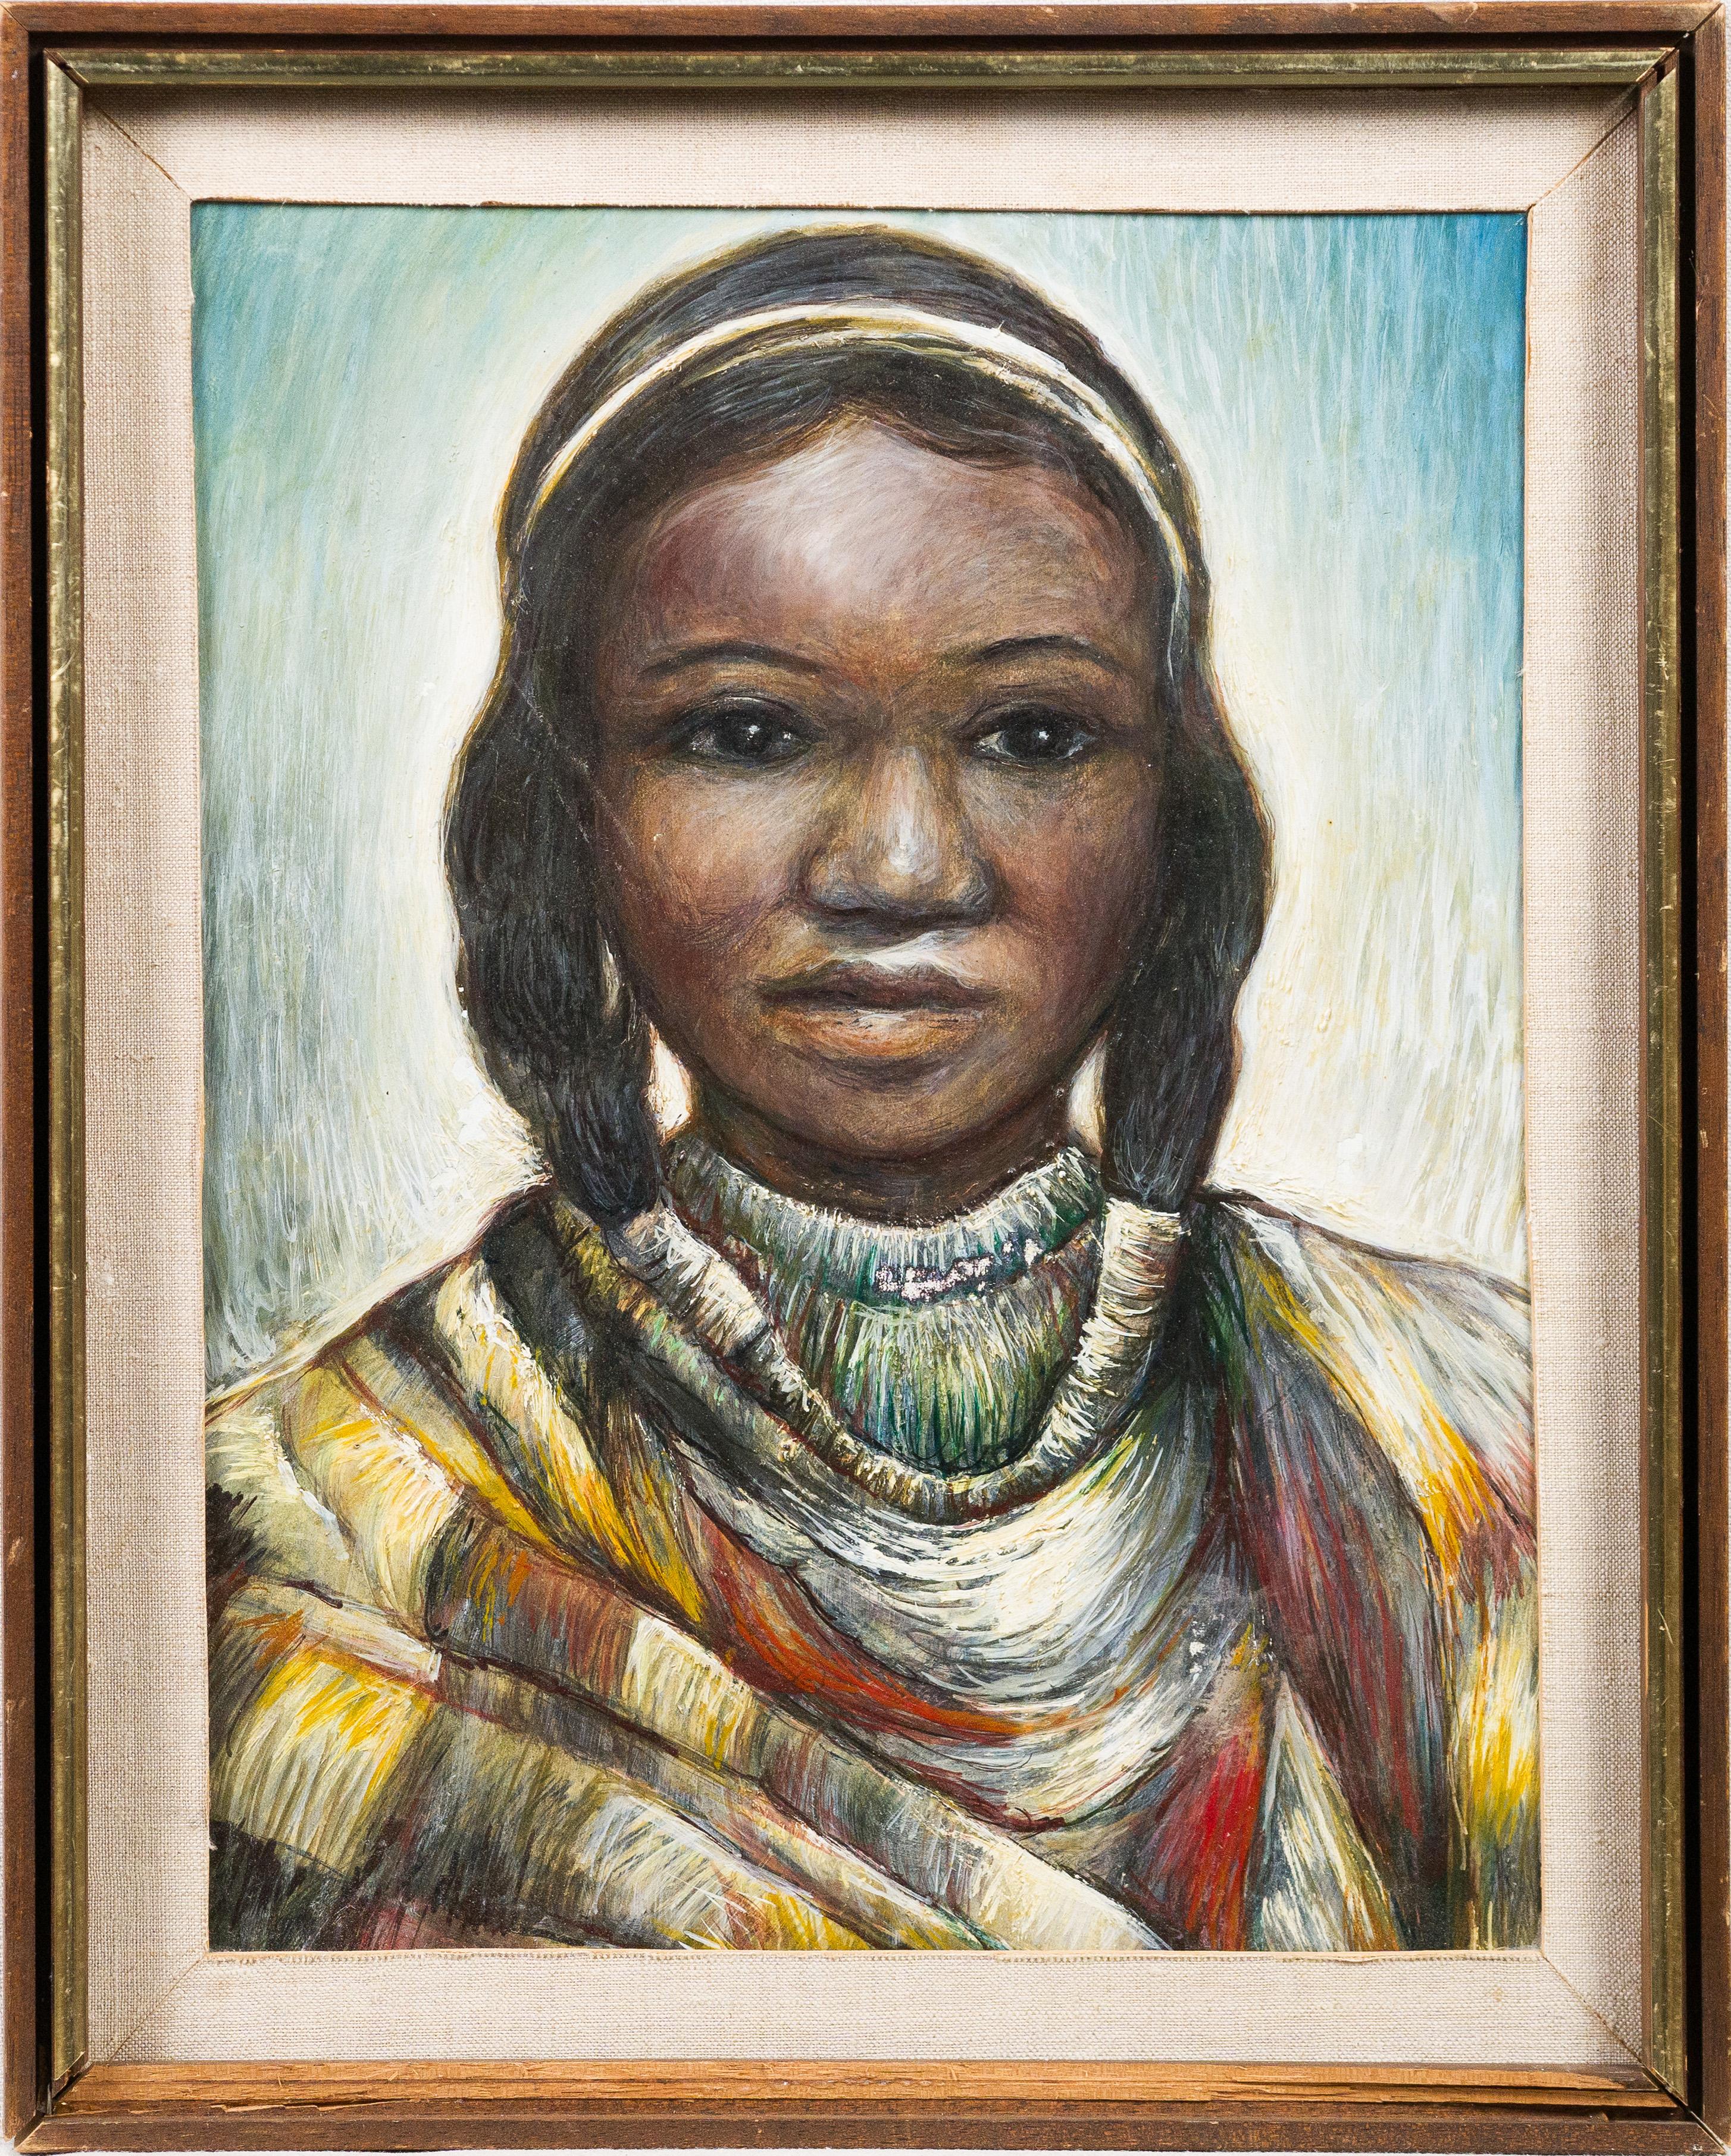 Unknown Portrait Painting – Gerahmtes Porträtgemälde der amerikanischen Impressionisten Taos School in New Mexico, gerahmt